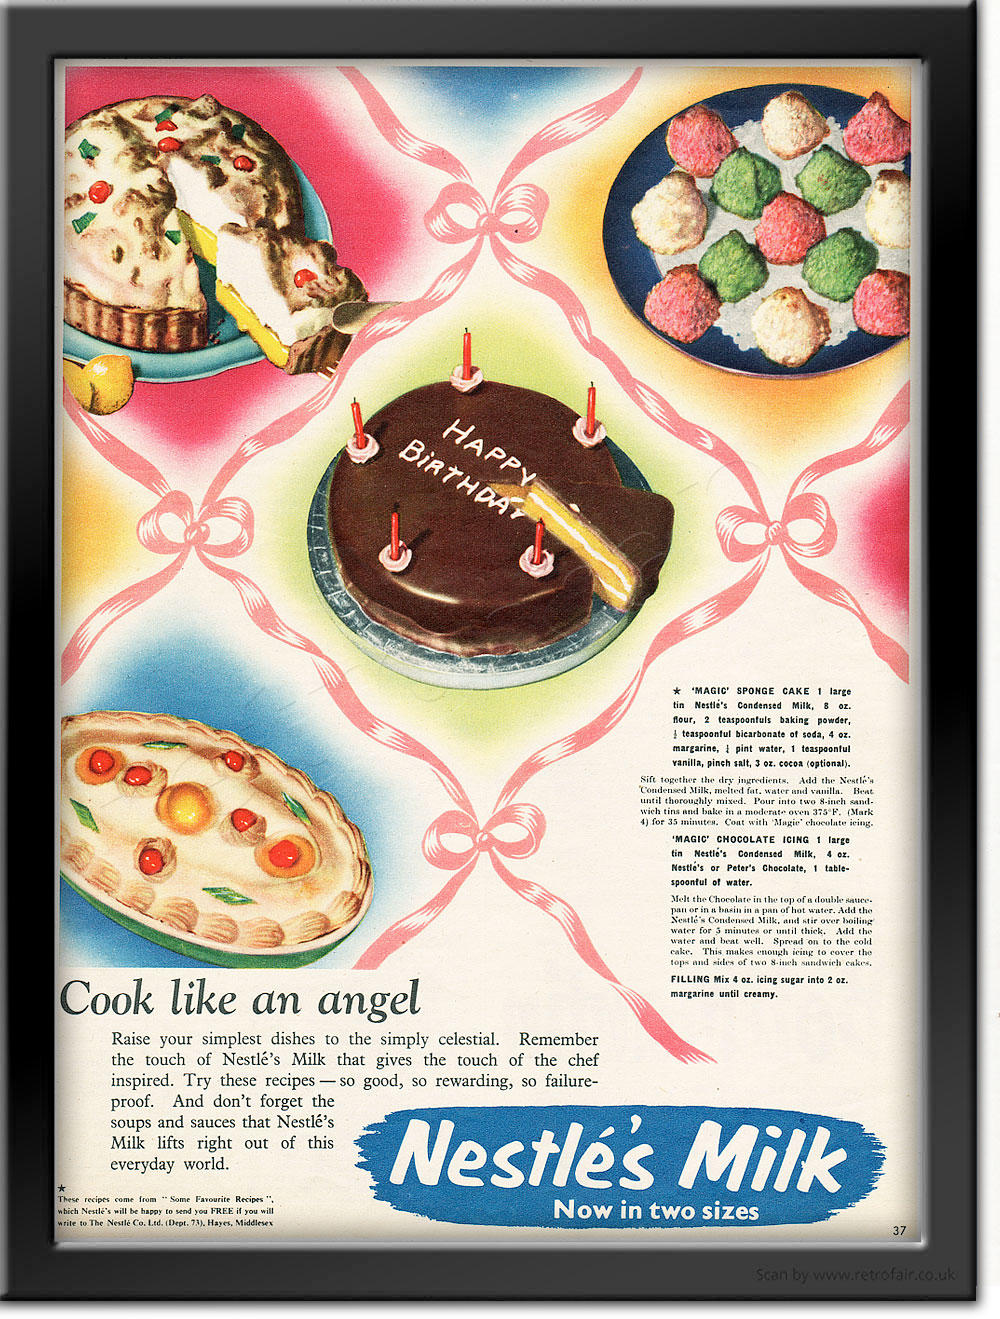 1955 Nestlé Milk retro ad